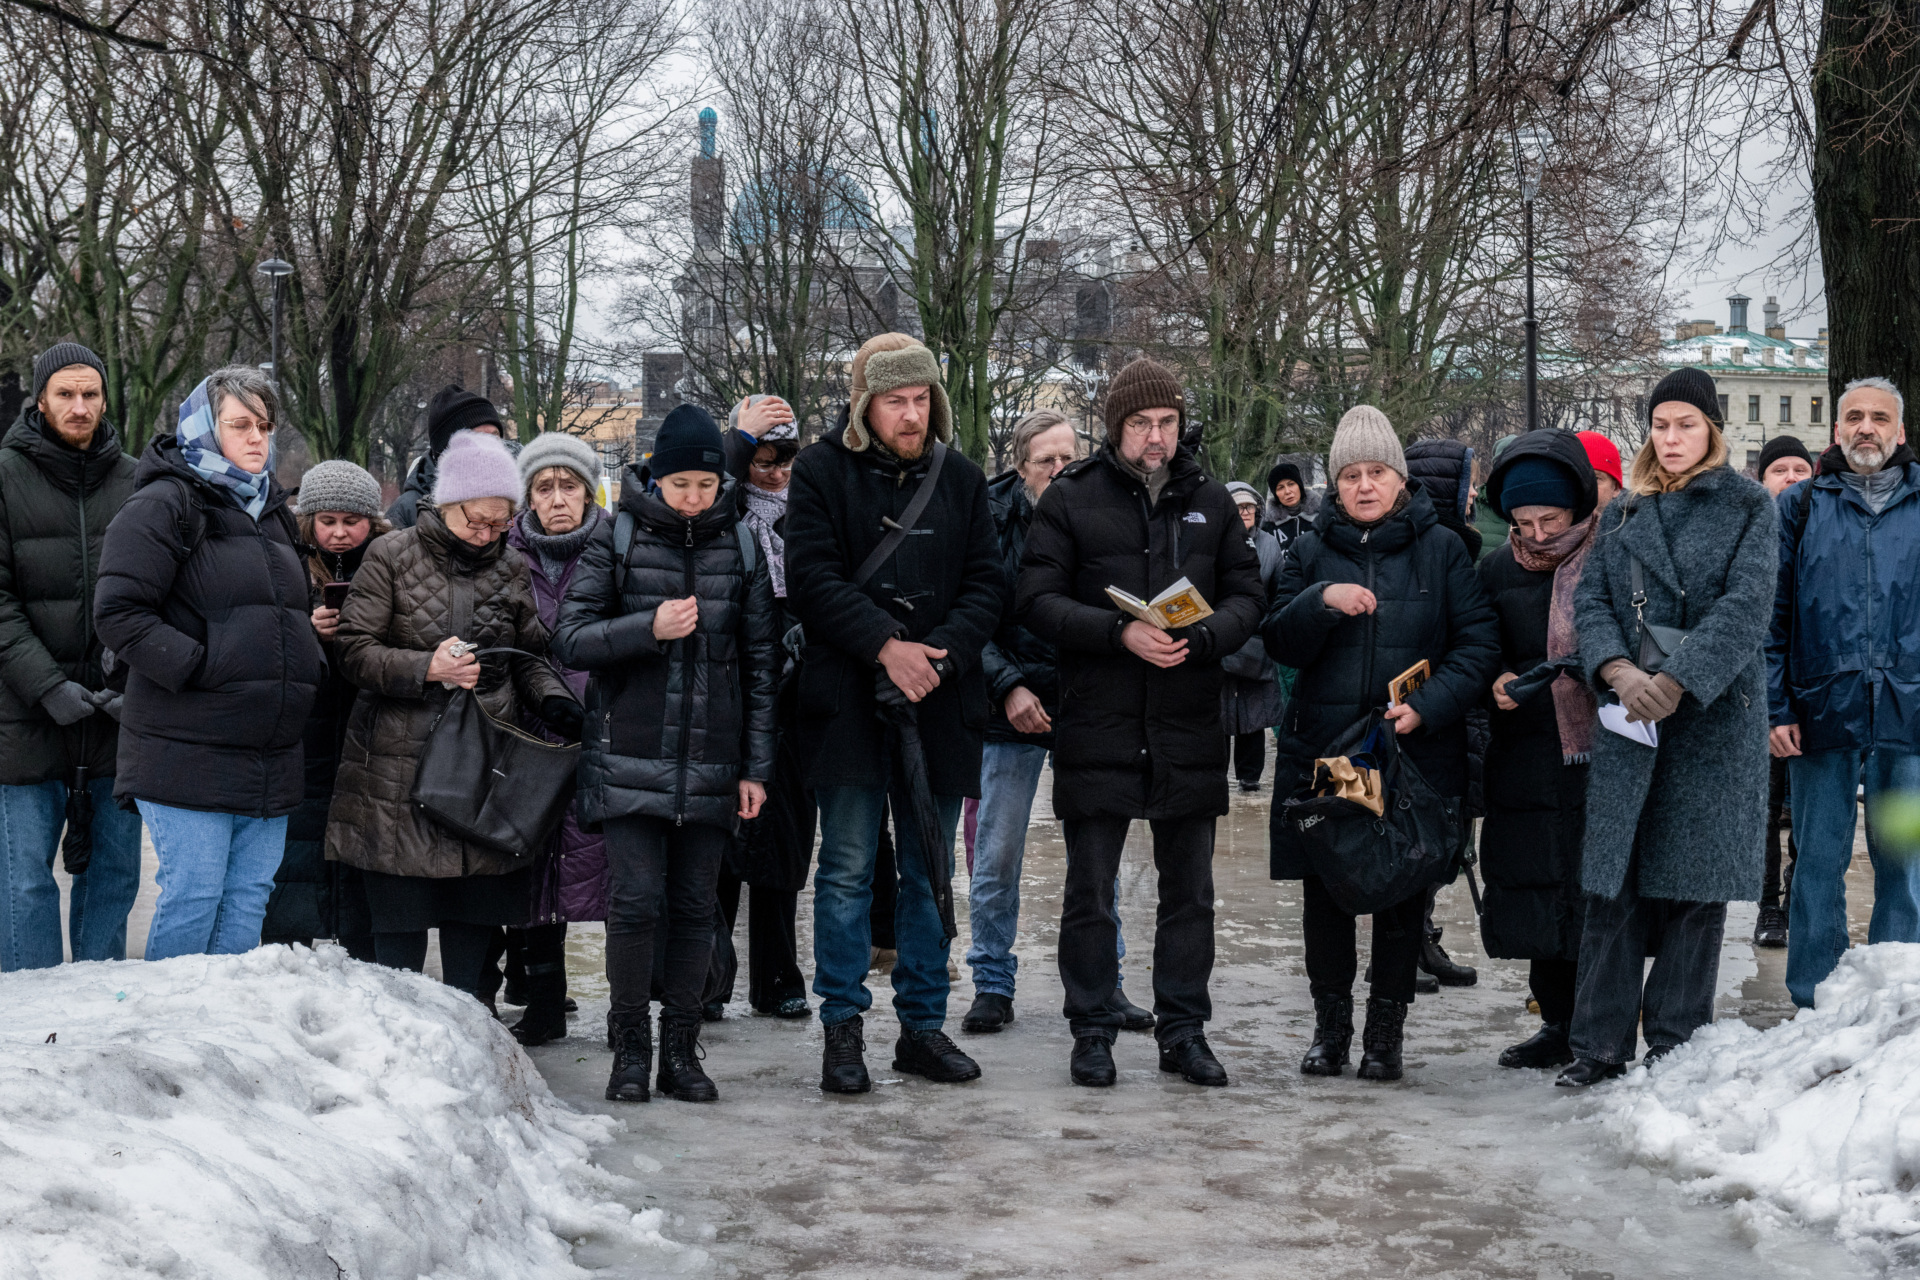 ΑΓΙΑ ΠΕΤΡΟΥΠΟΛΗ, ΡΩΣΙΑ - 17/02/2024: Πολιτικό μνημόσυνο κοντά σε μνημείο για τα θύματα της πολιτικής καταστολής, για να τιμήσουν τη μνήμη του ηγέτη της ρωσικής αντιπολίτευσης Αλεξέι Ναβάλνι την επομένη της είδησης του θανάτου του, στην Αγία Πετρούπολη. (Photo by Andrei Bok/SOPA Images/LightRocket via Getty Images)